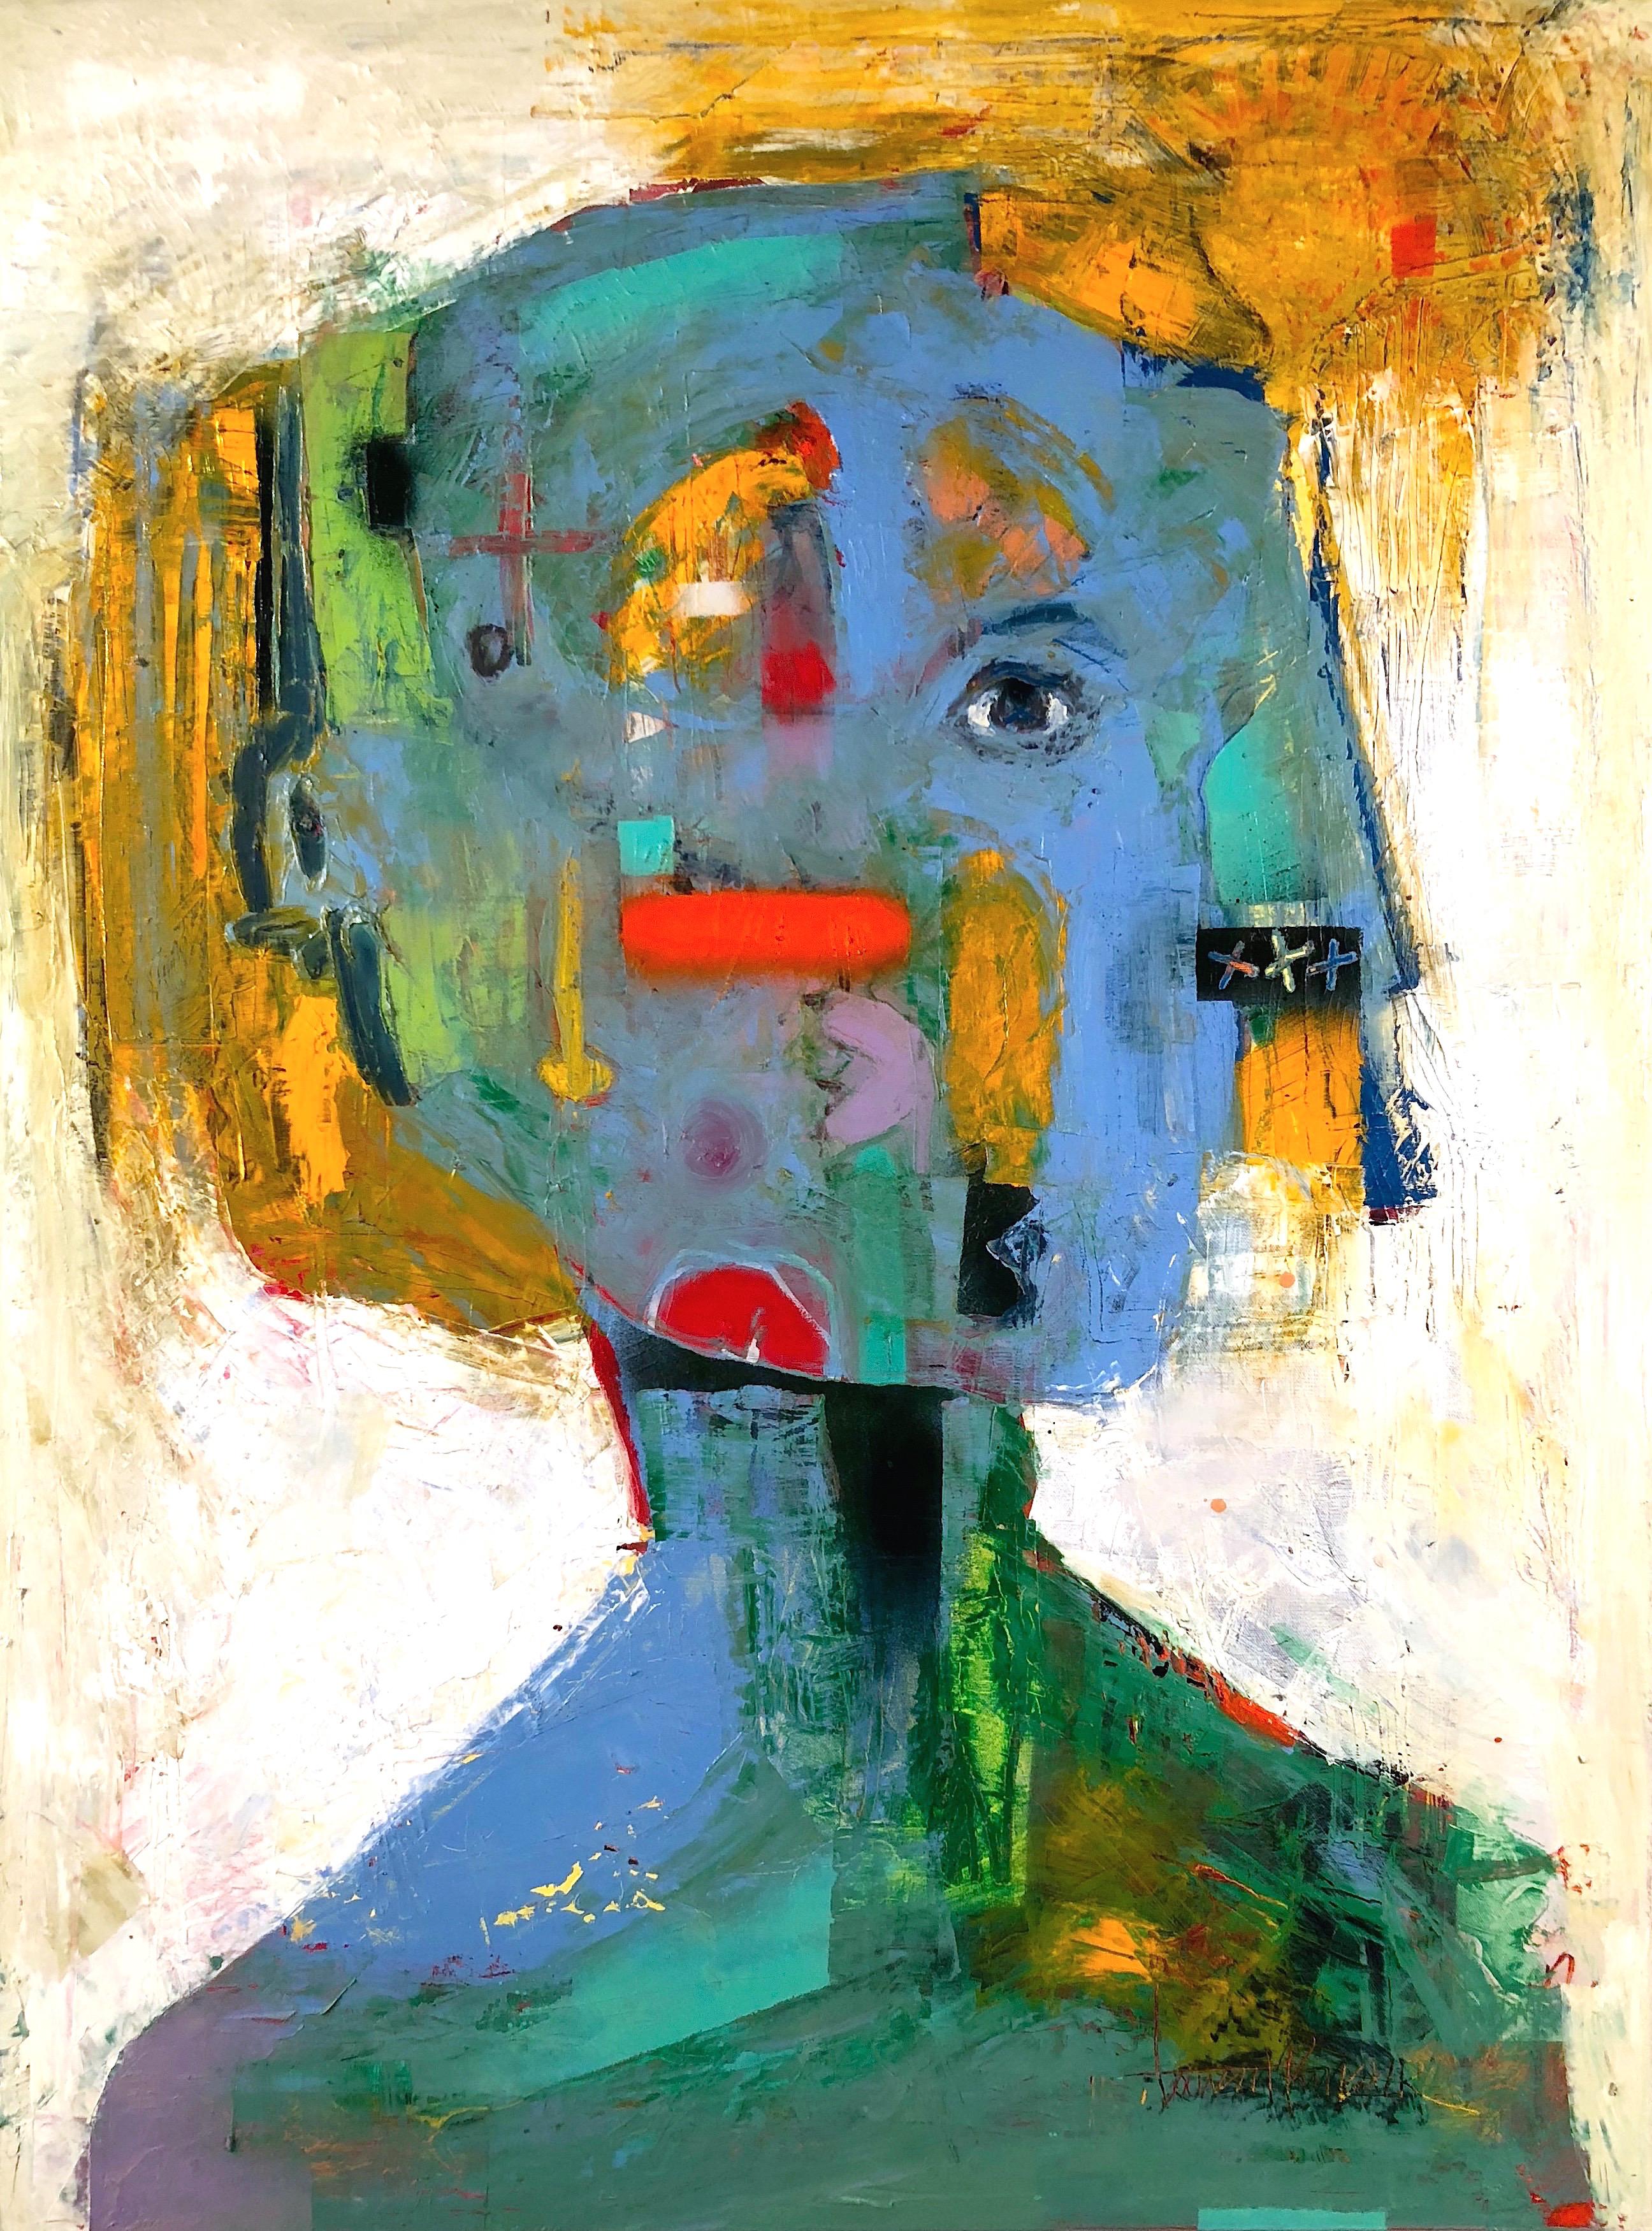 Laurent Proneur Portrait Painting – The portrait